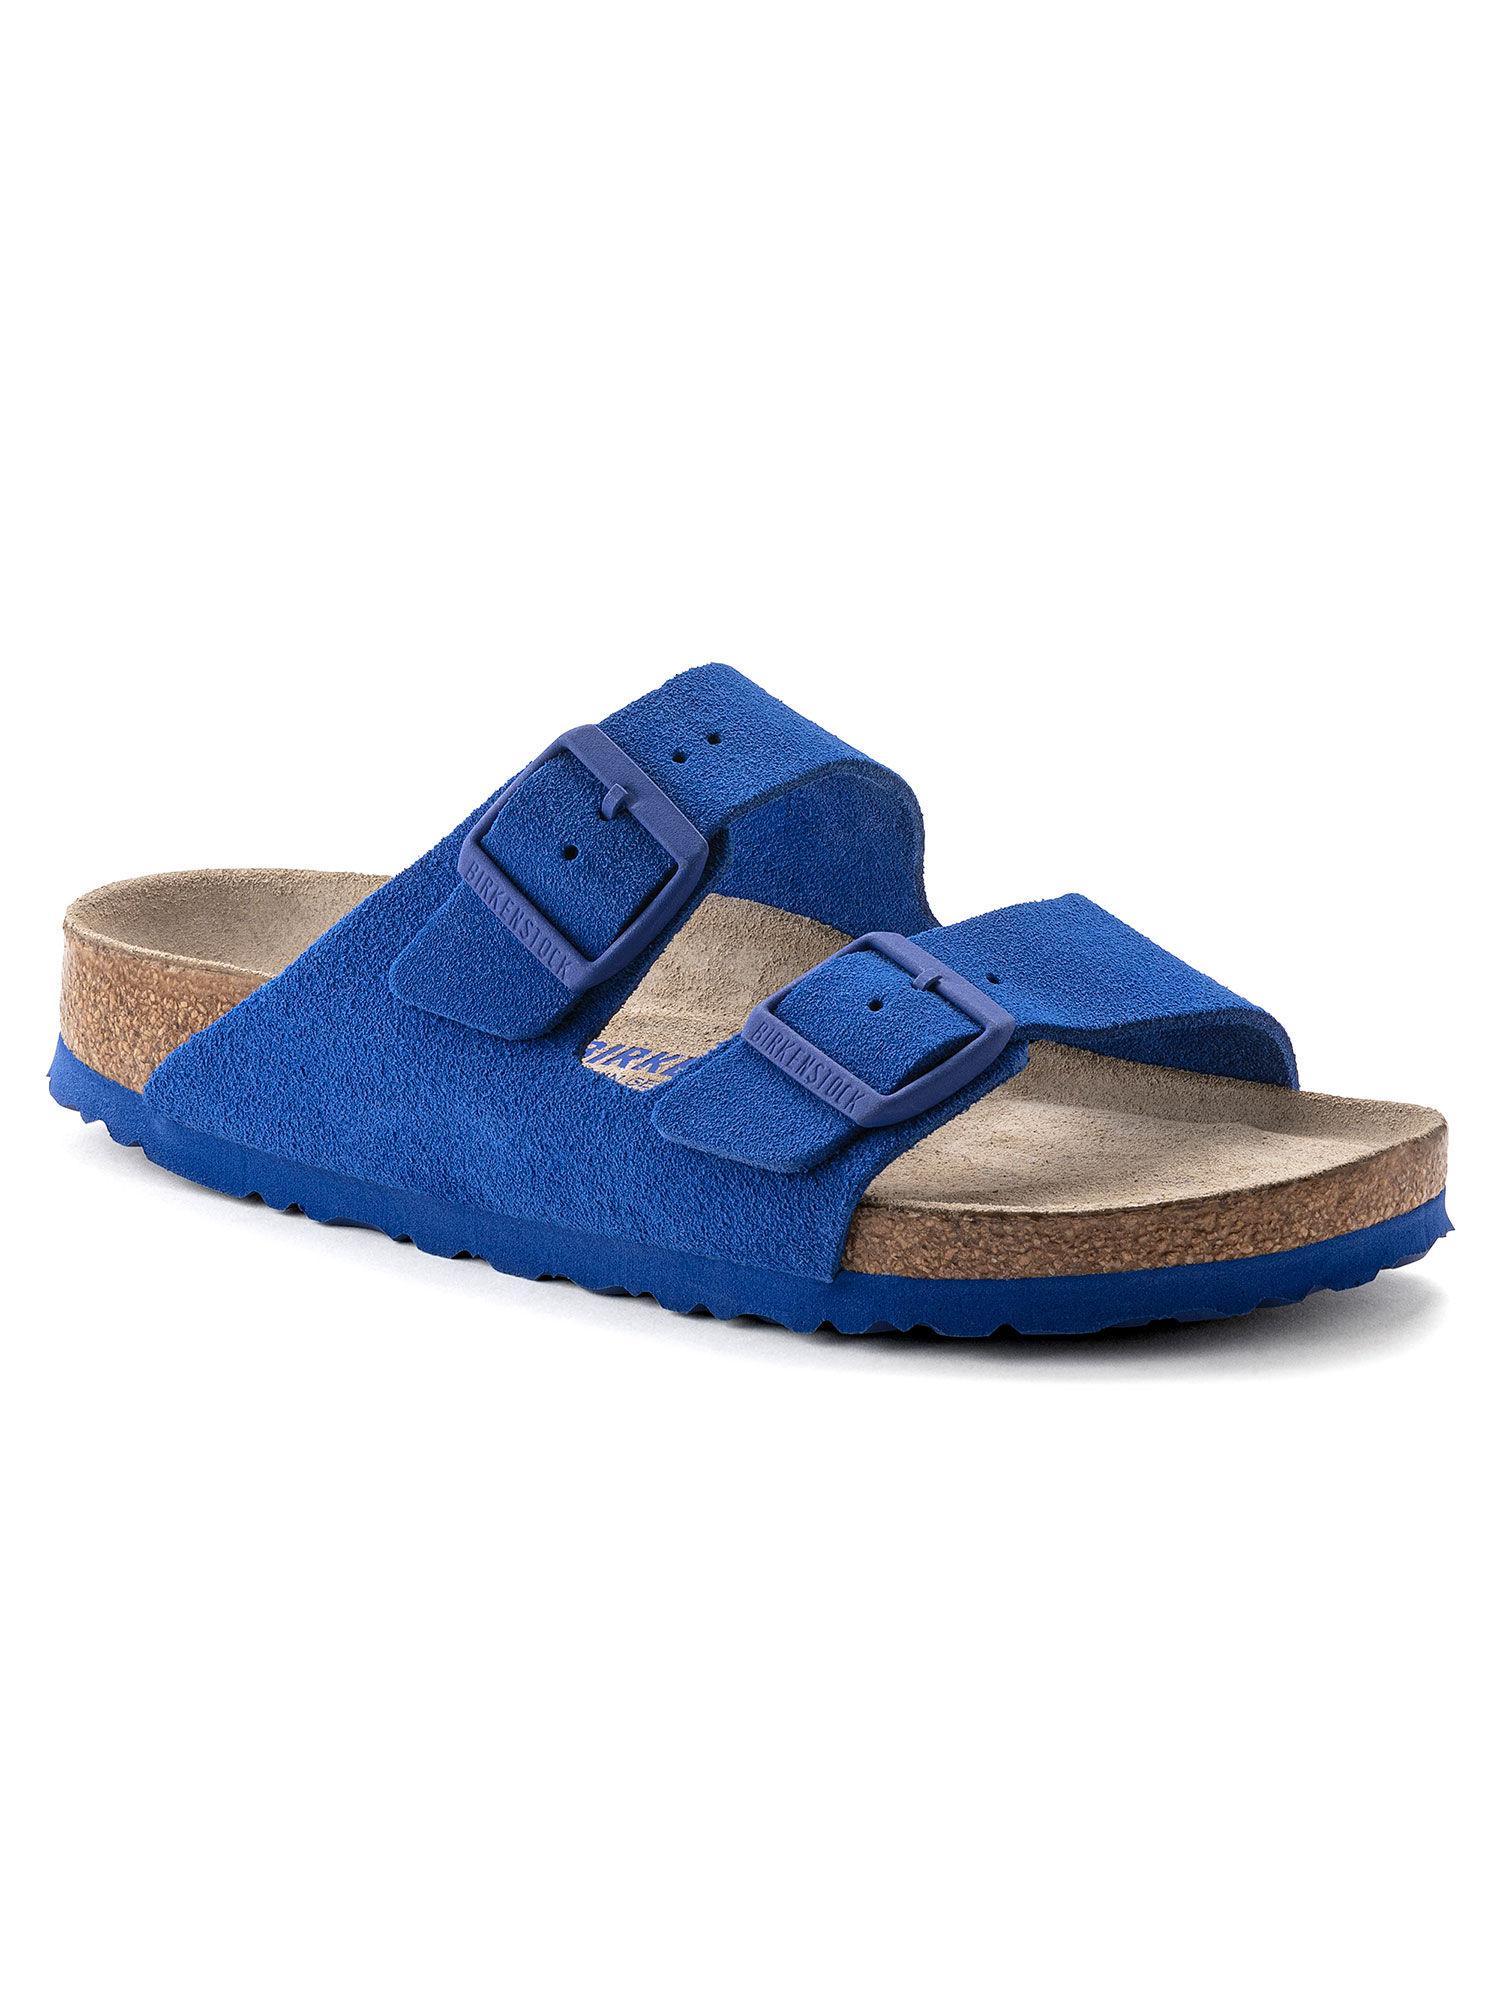 arizona-soft-footbed-ultra-blue-regular-unisex-sliders